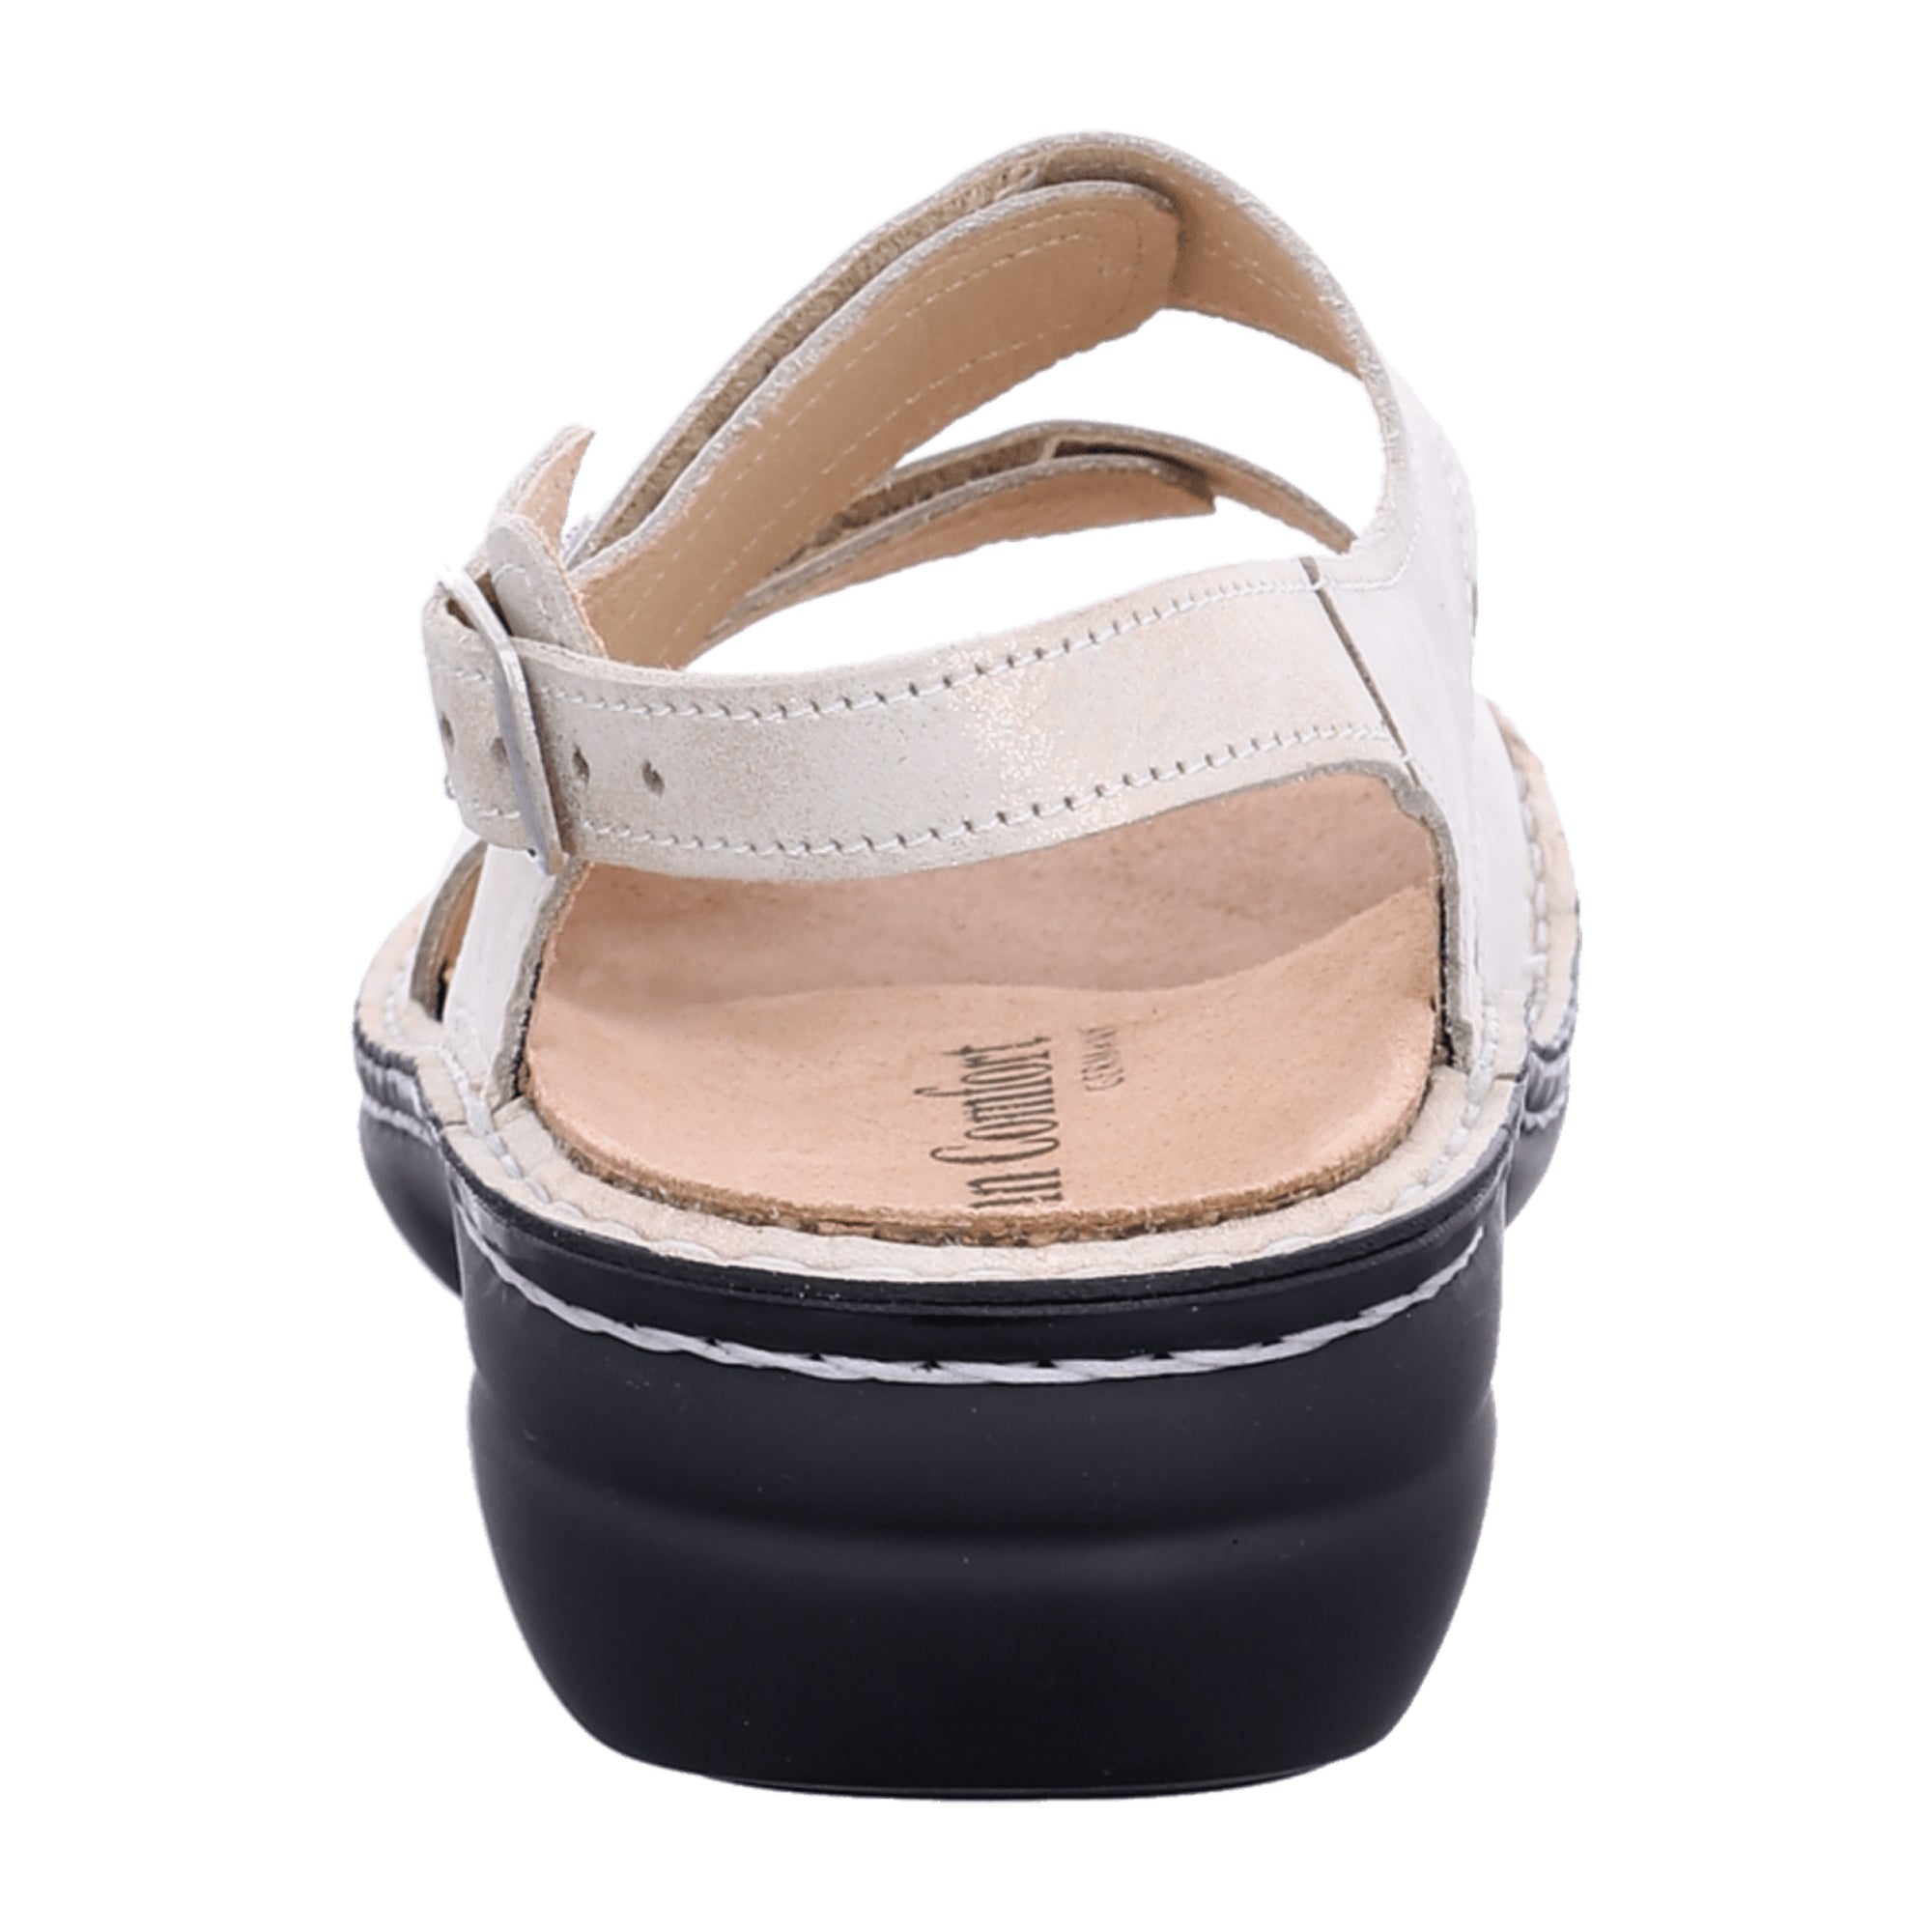 Finn Comfort Milos White Sandals for Women - Stylish & Durable